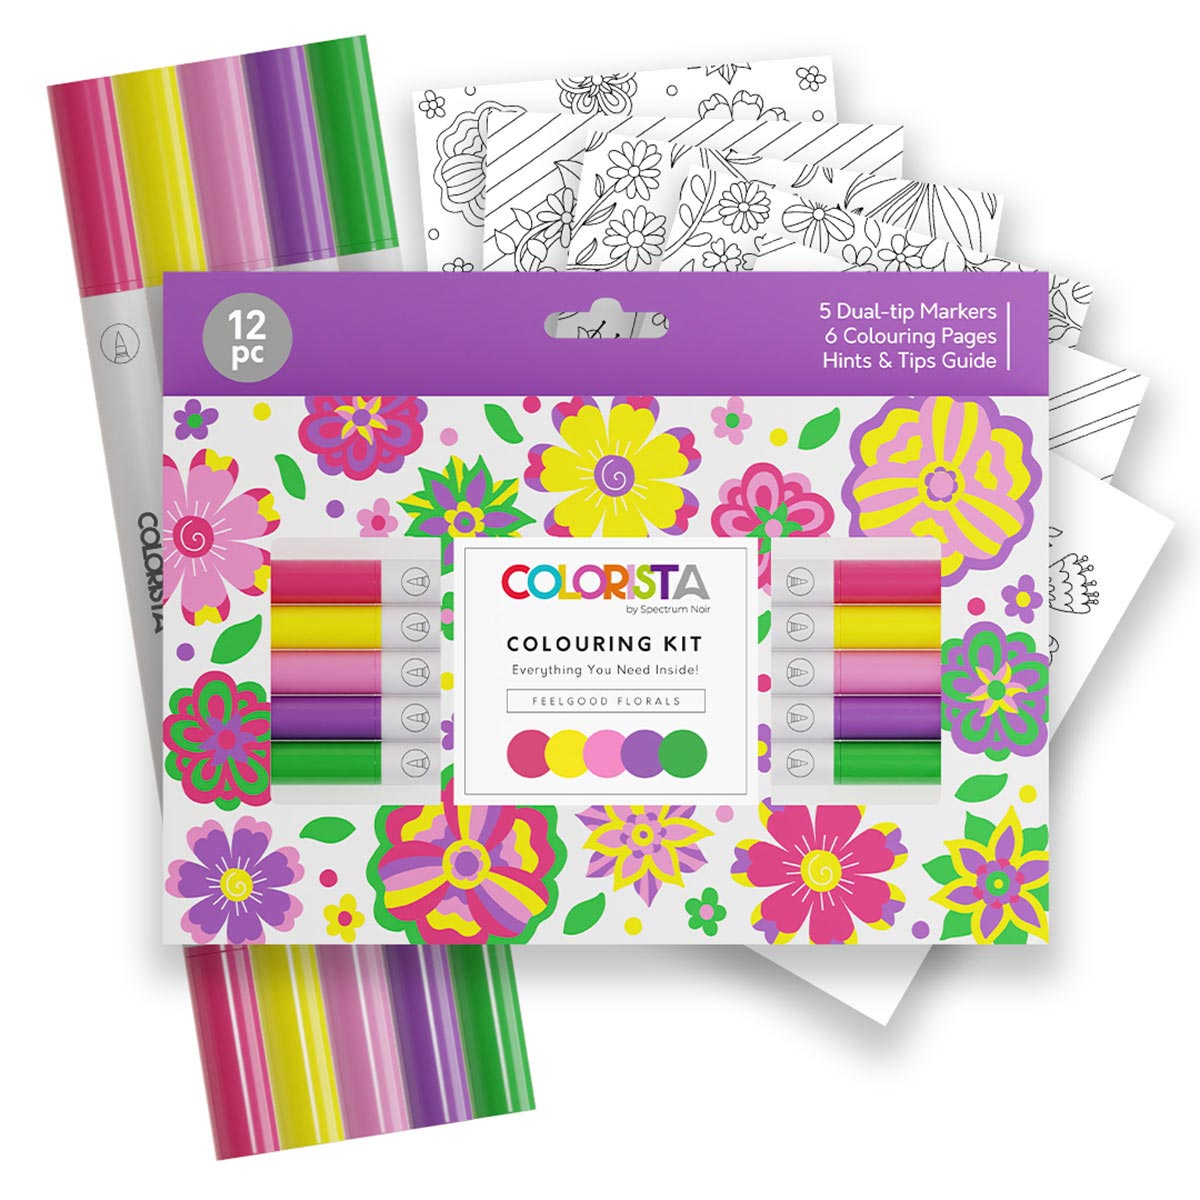 Spectrum Noir Colrista - Kit de coloriage - marqueurs de pinceau à double pointe - Florals Feelgood